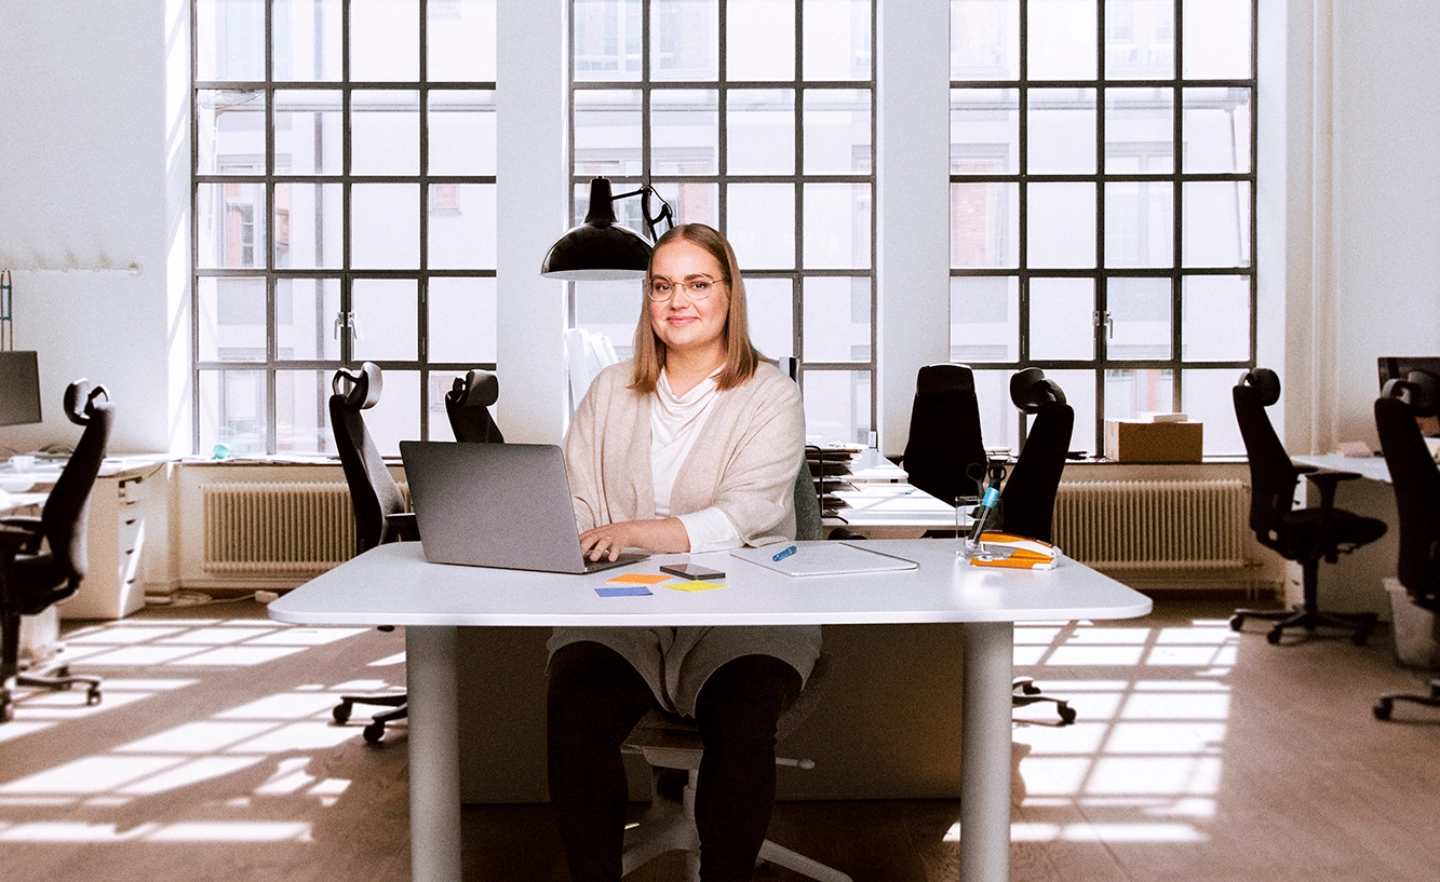 Työnantajaneuvonnan asiakaspalvelija istuu työpöydän ääressä keskellä start-up-toimistoa.  - Work in Finland International Recruitment Advice Service for Employers